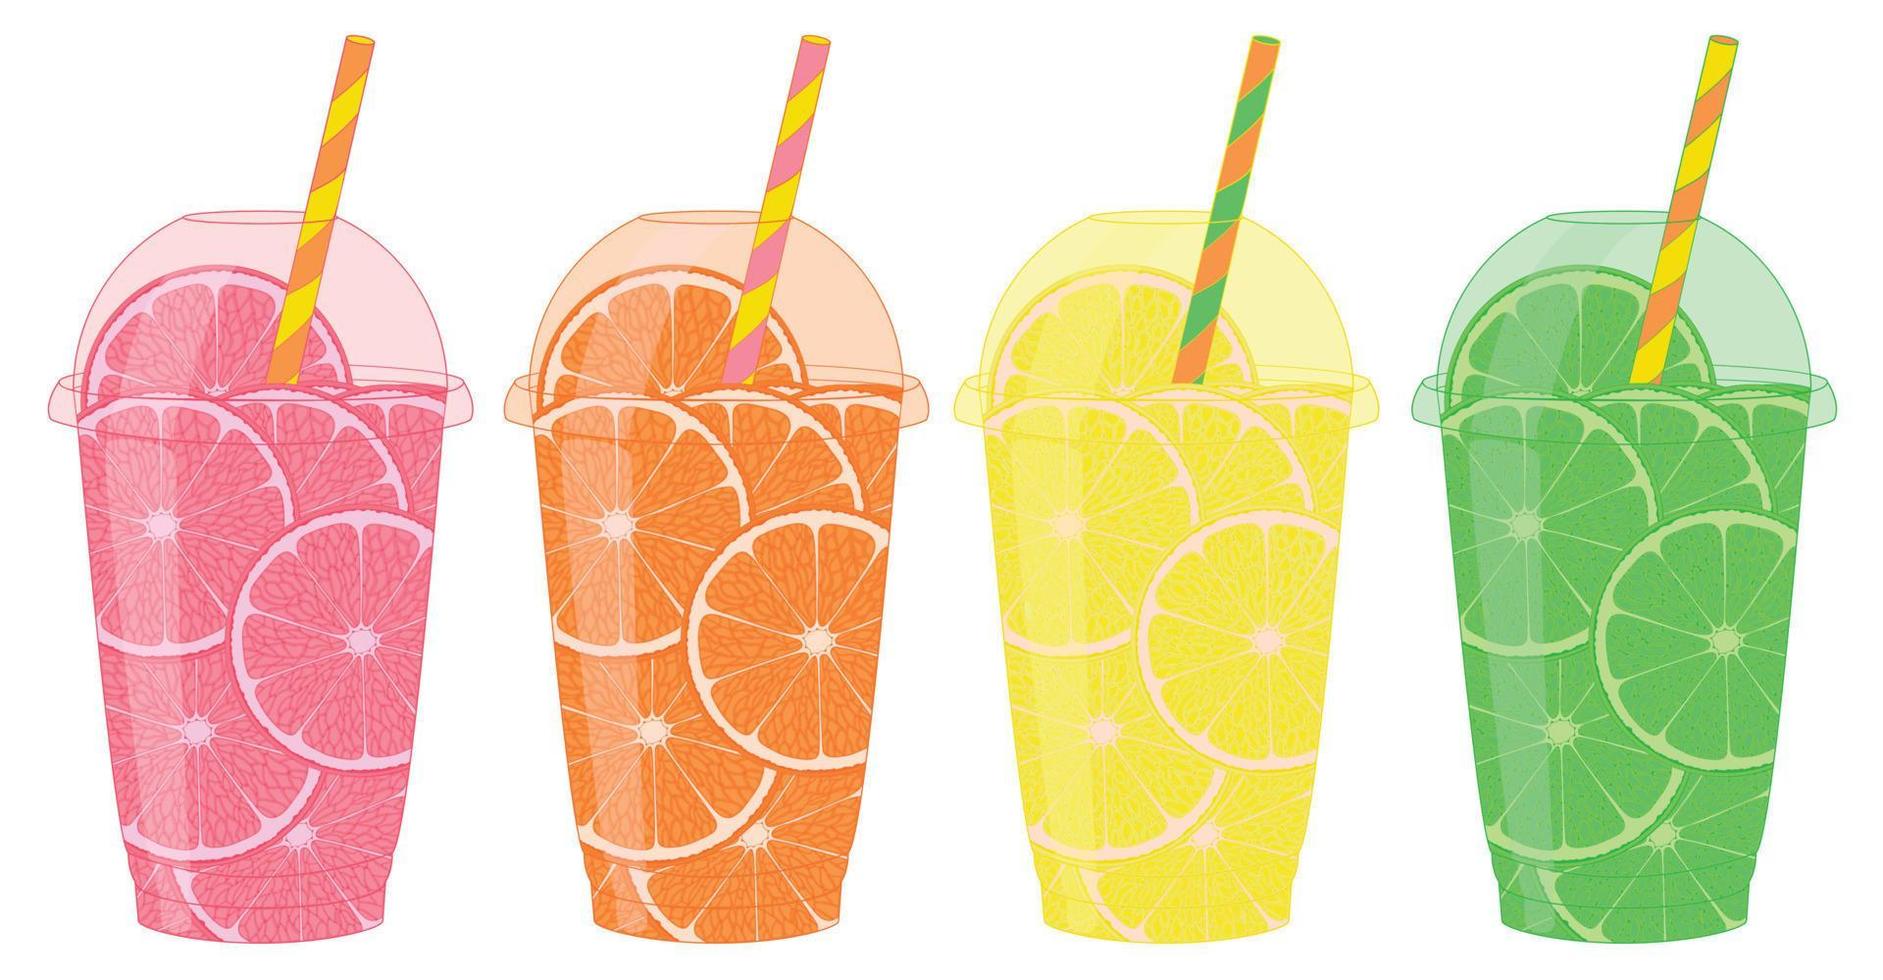 vijf plastic cups met fruit plakjes. oranje, citroen, groen citroen, grapefruit en citrus vruchten. kleur illustratie. vector